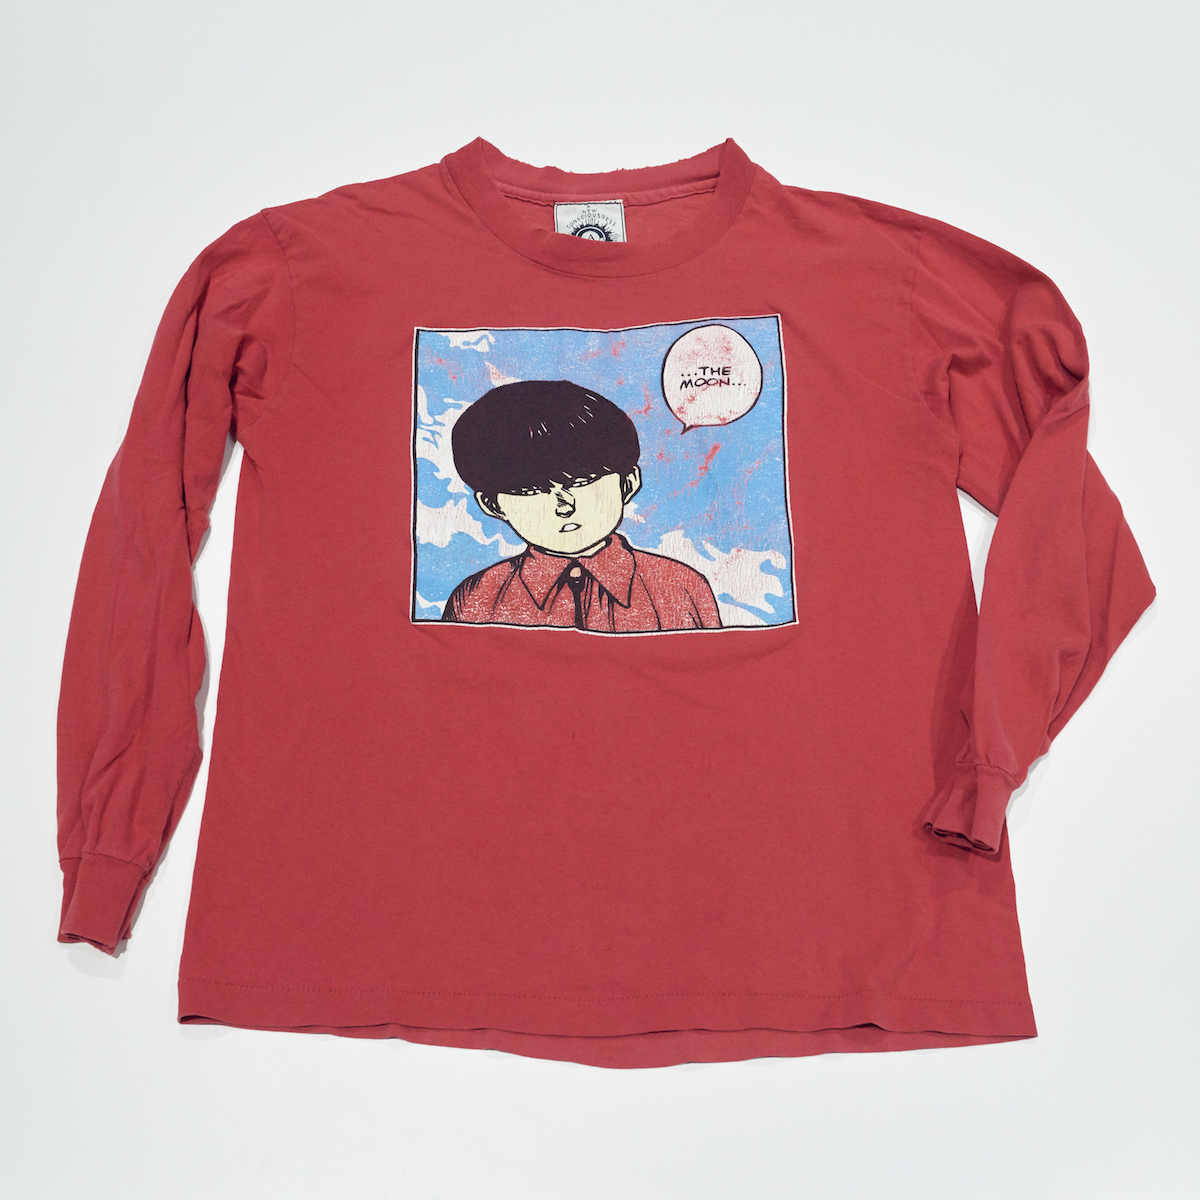 60000円 【在庫限り】 AKIRA vintage T-shirt 鉄雄